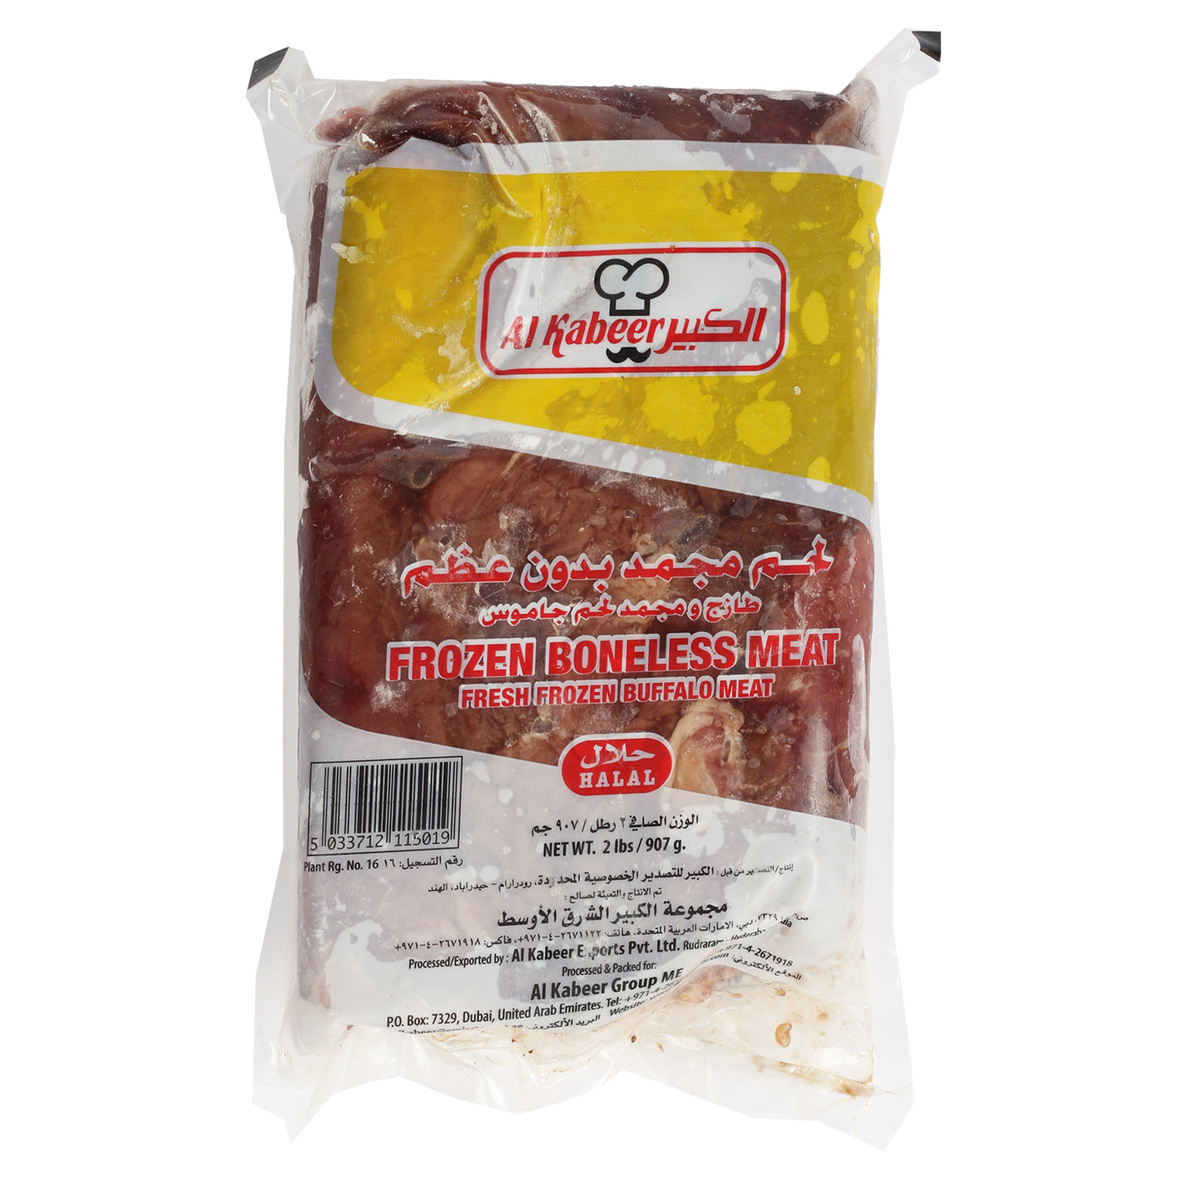 Al Kabeer Frozen Boneless Buffalo Meat 907 g